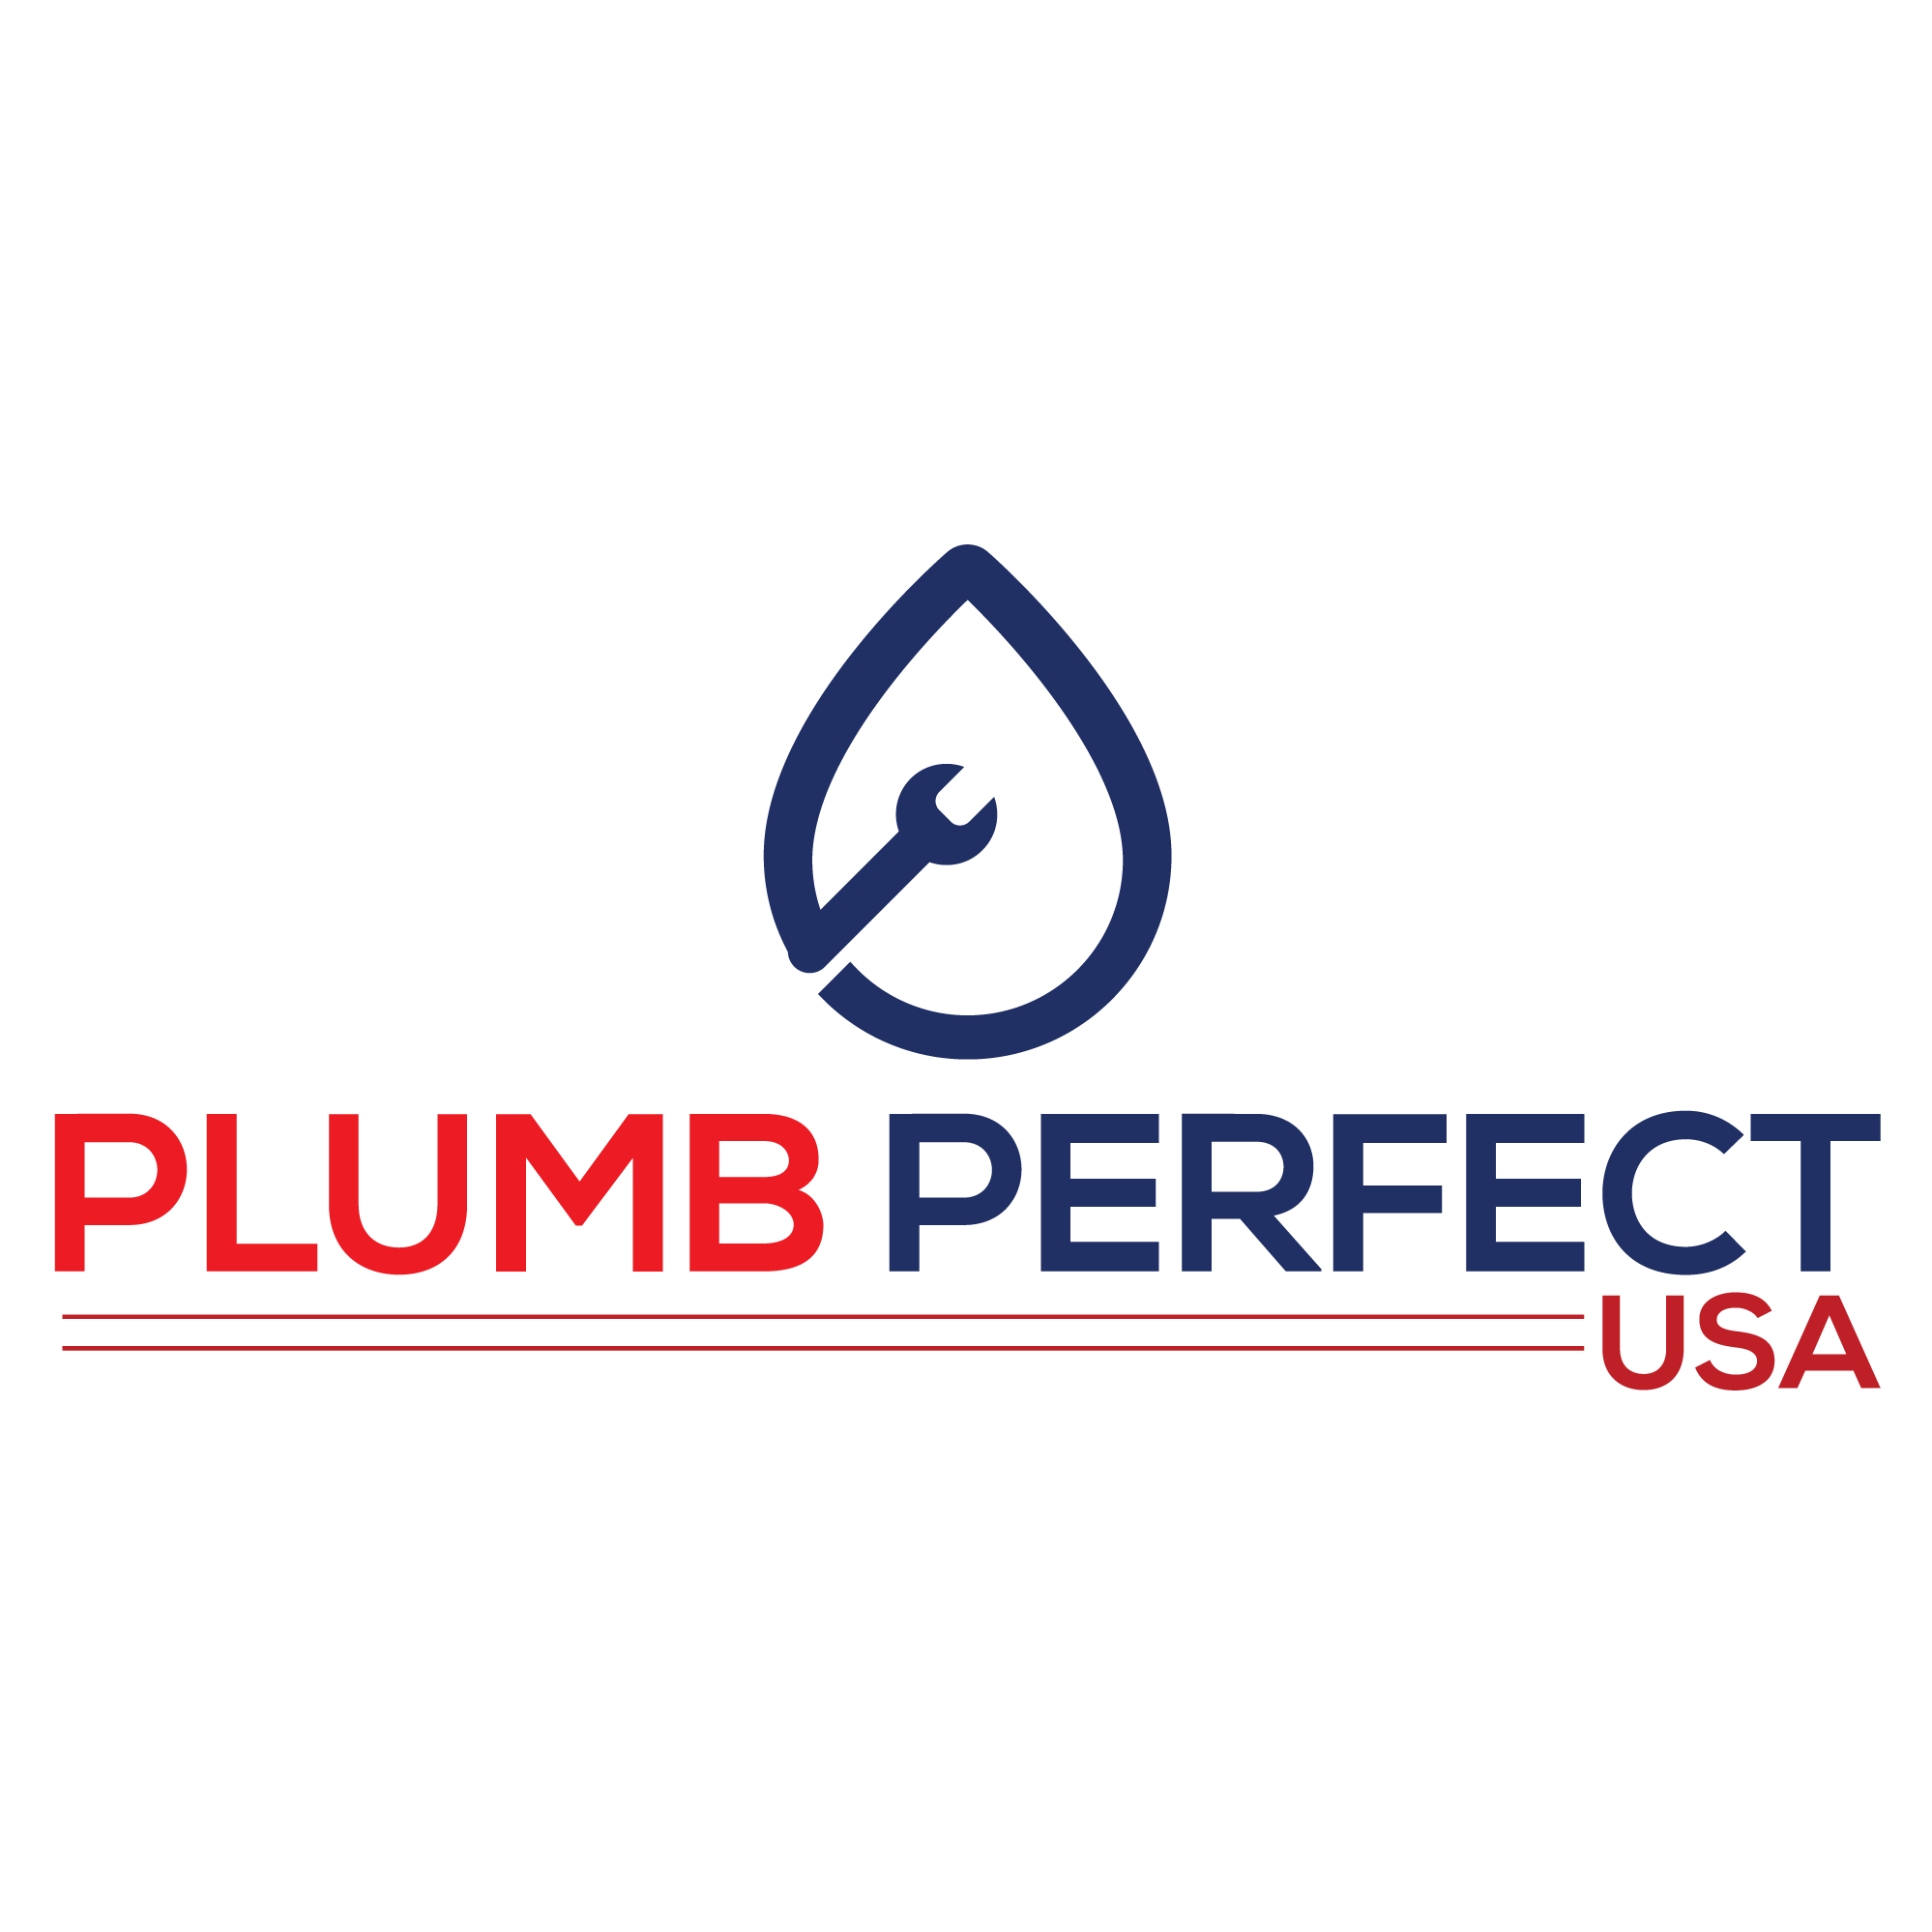 Plumb Perfect USA